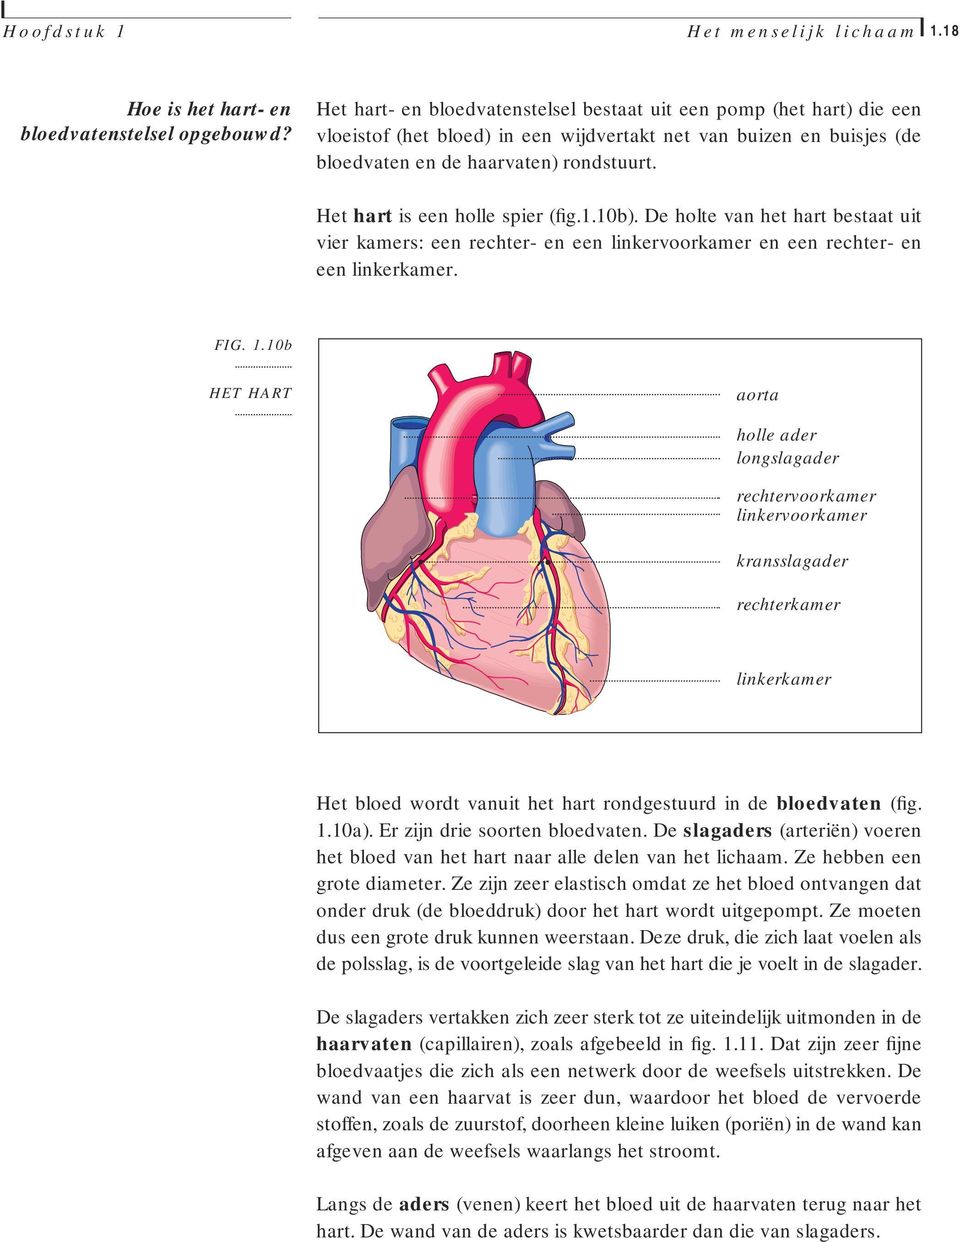 Het hart is een holle spier (fig.1.10b). De holte van het hart bestaat uit vier kamers: een rechter- en een linkervoorkamer en een rechter- en een linkerkamer. FIG. 1.